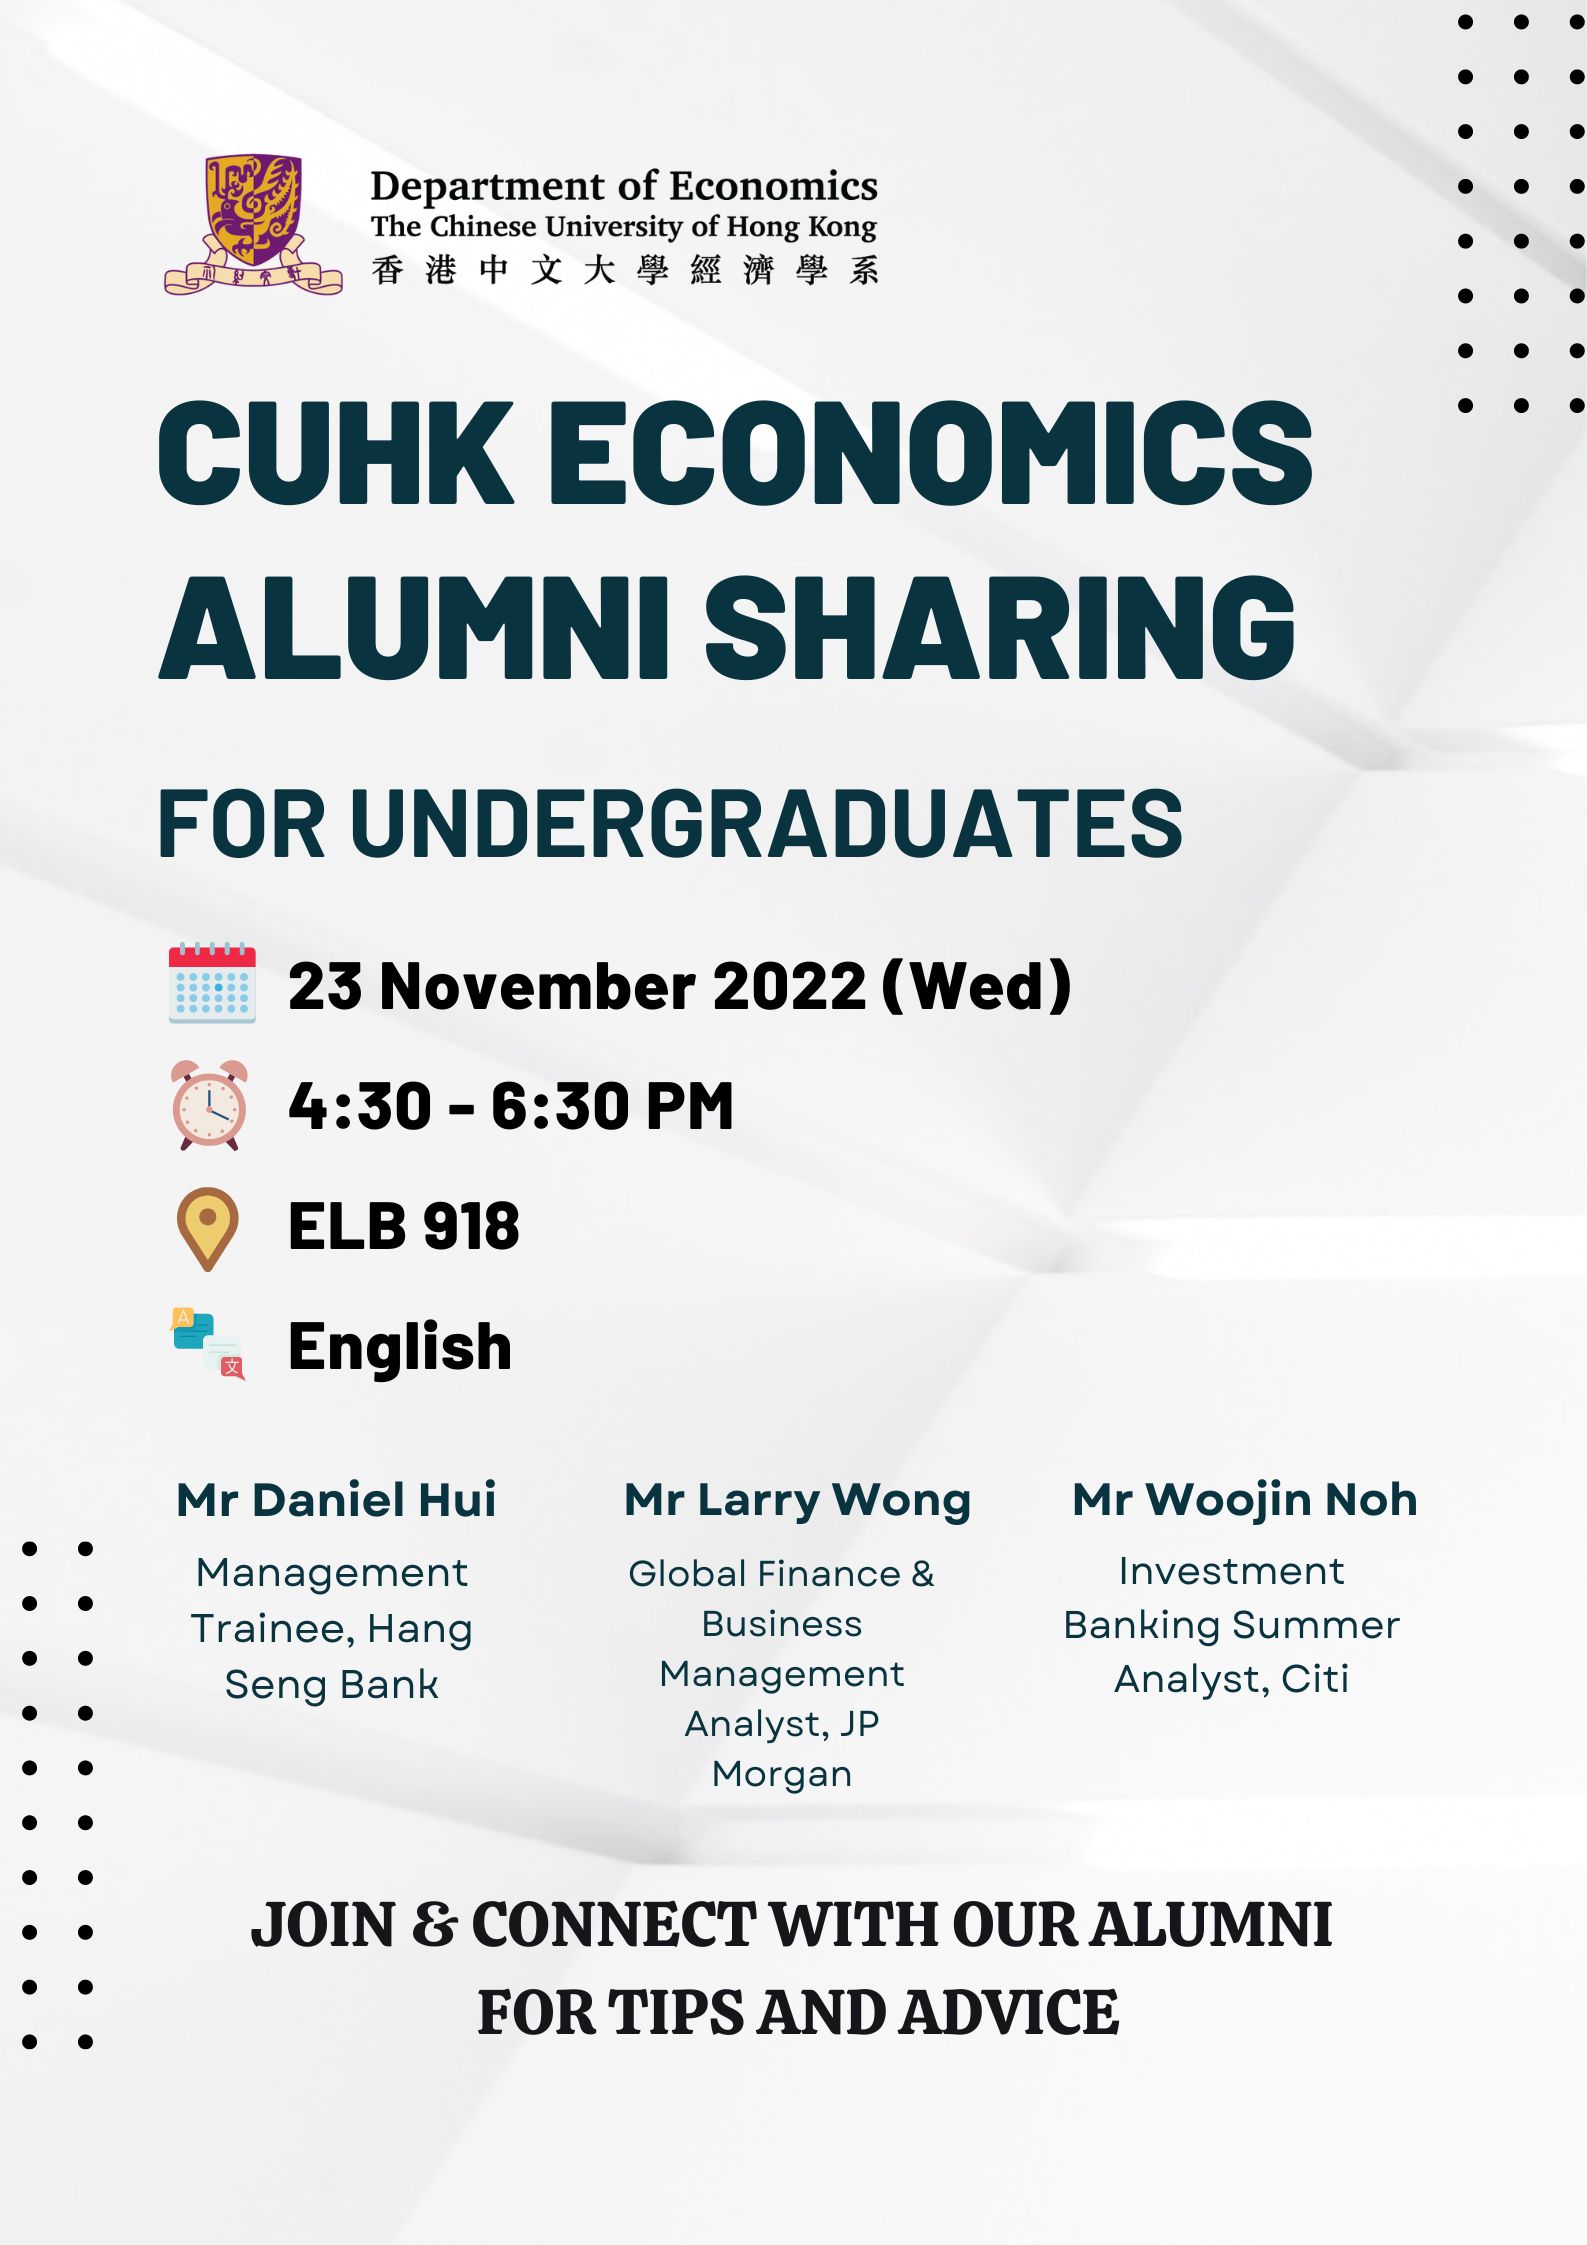 Alumni Sharing for Undergraduates